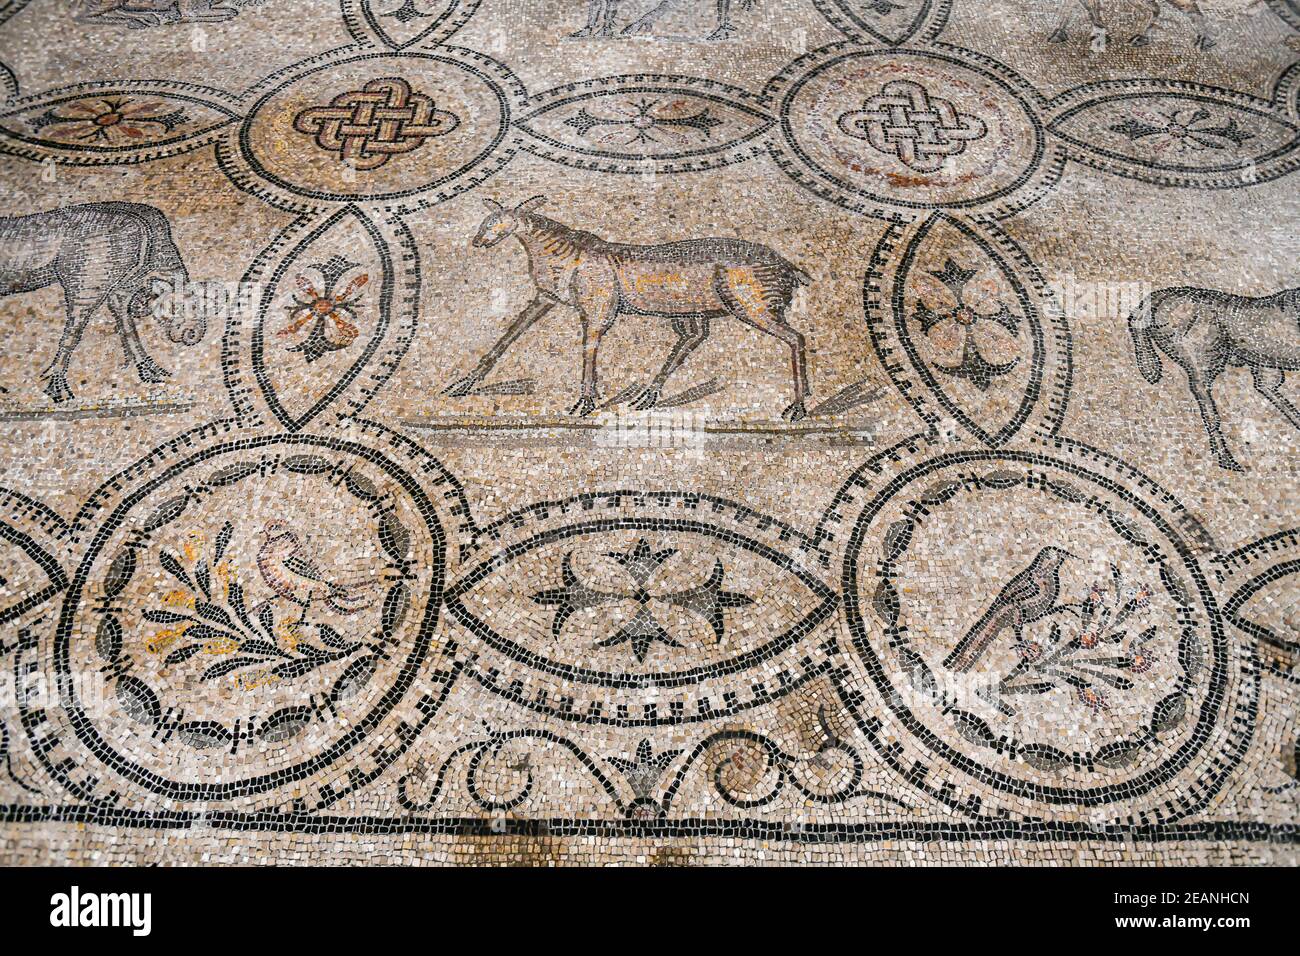 Intérieur de la cathédrale avec le pavé de mosaïque, site classé au patrimoine mondial de l'UNESCO, Aquileia, Udine, Friuli-Venezia Giulia, Italie, Europe Banque D'Images